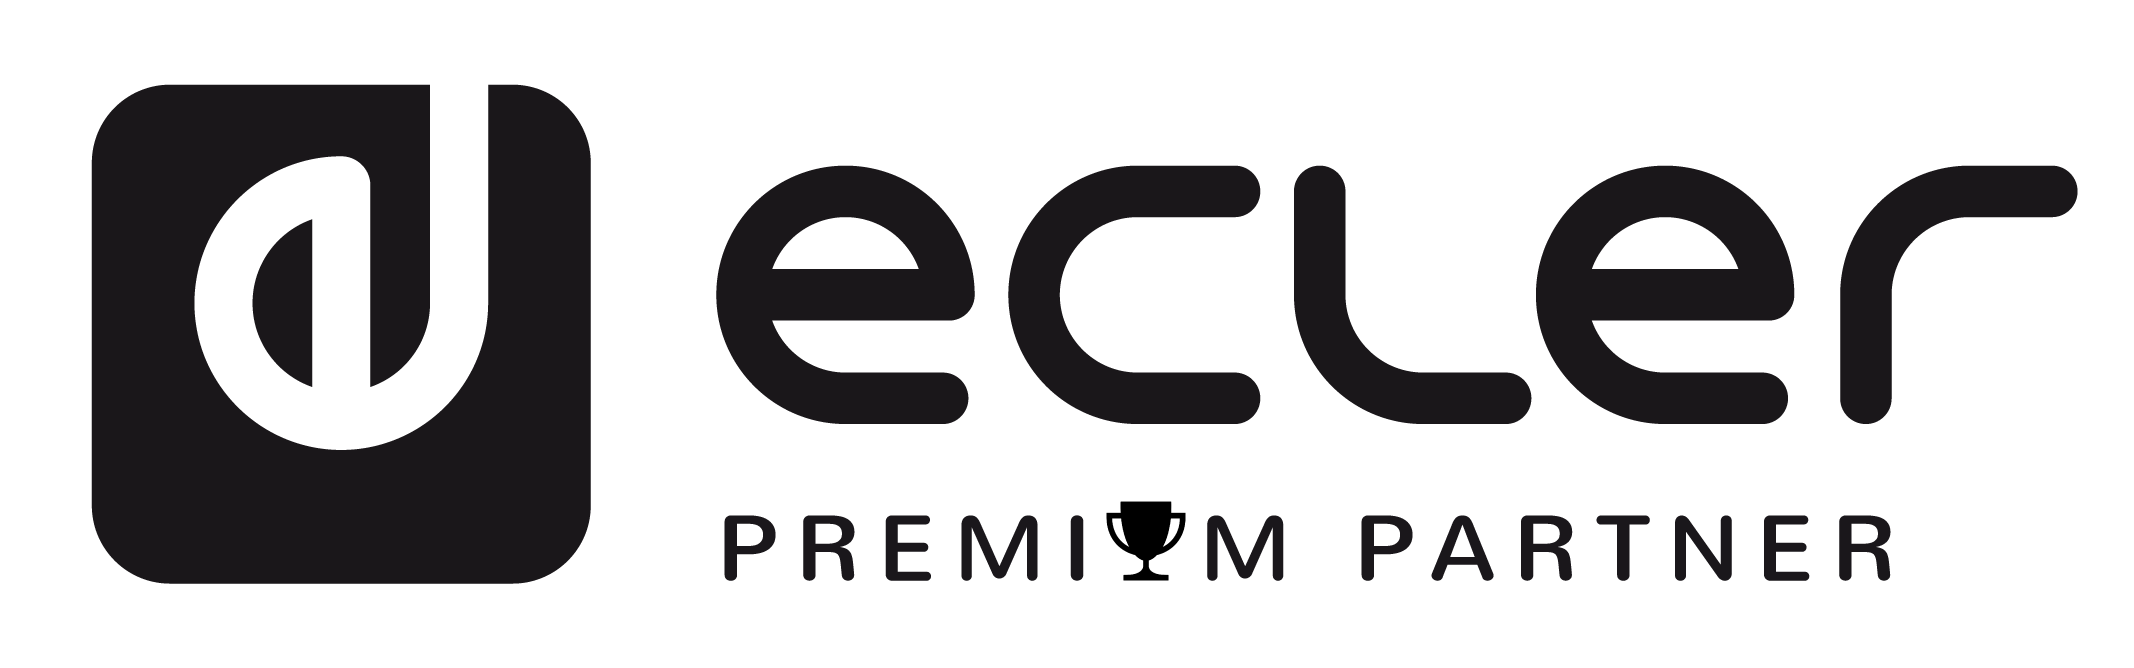 Ecler Premium Partner